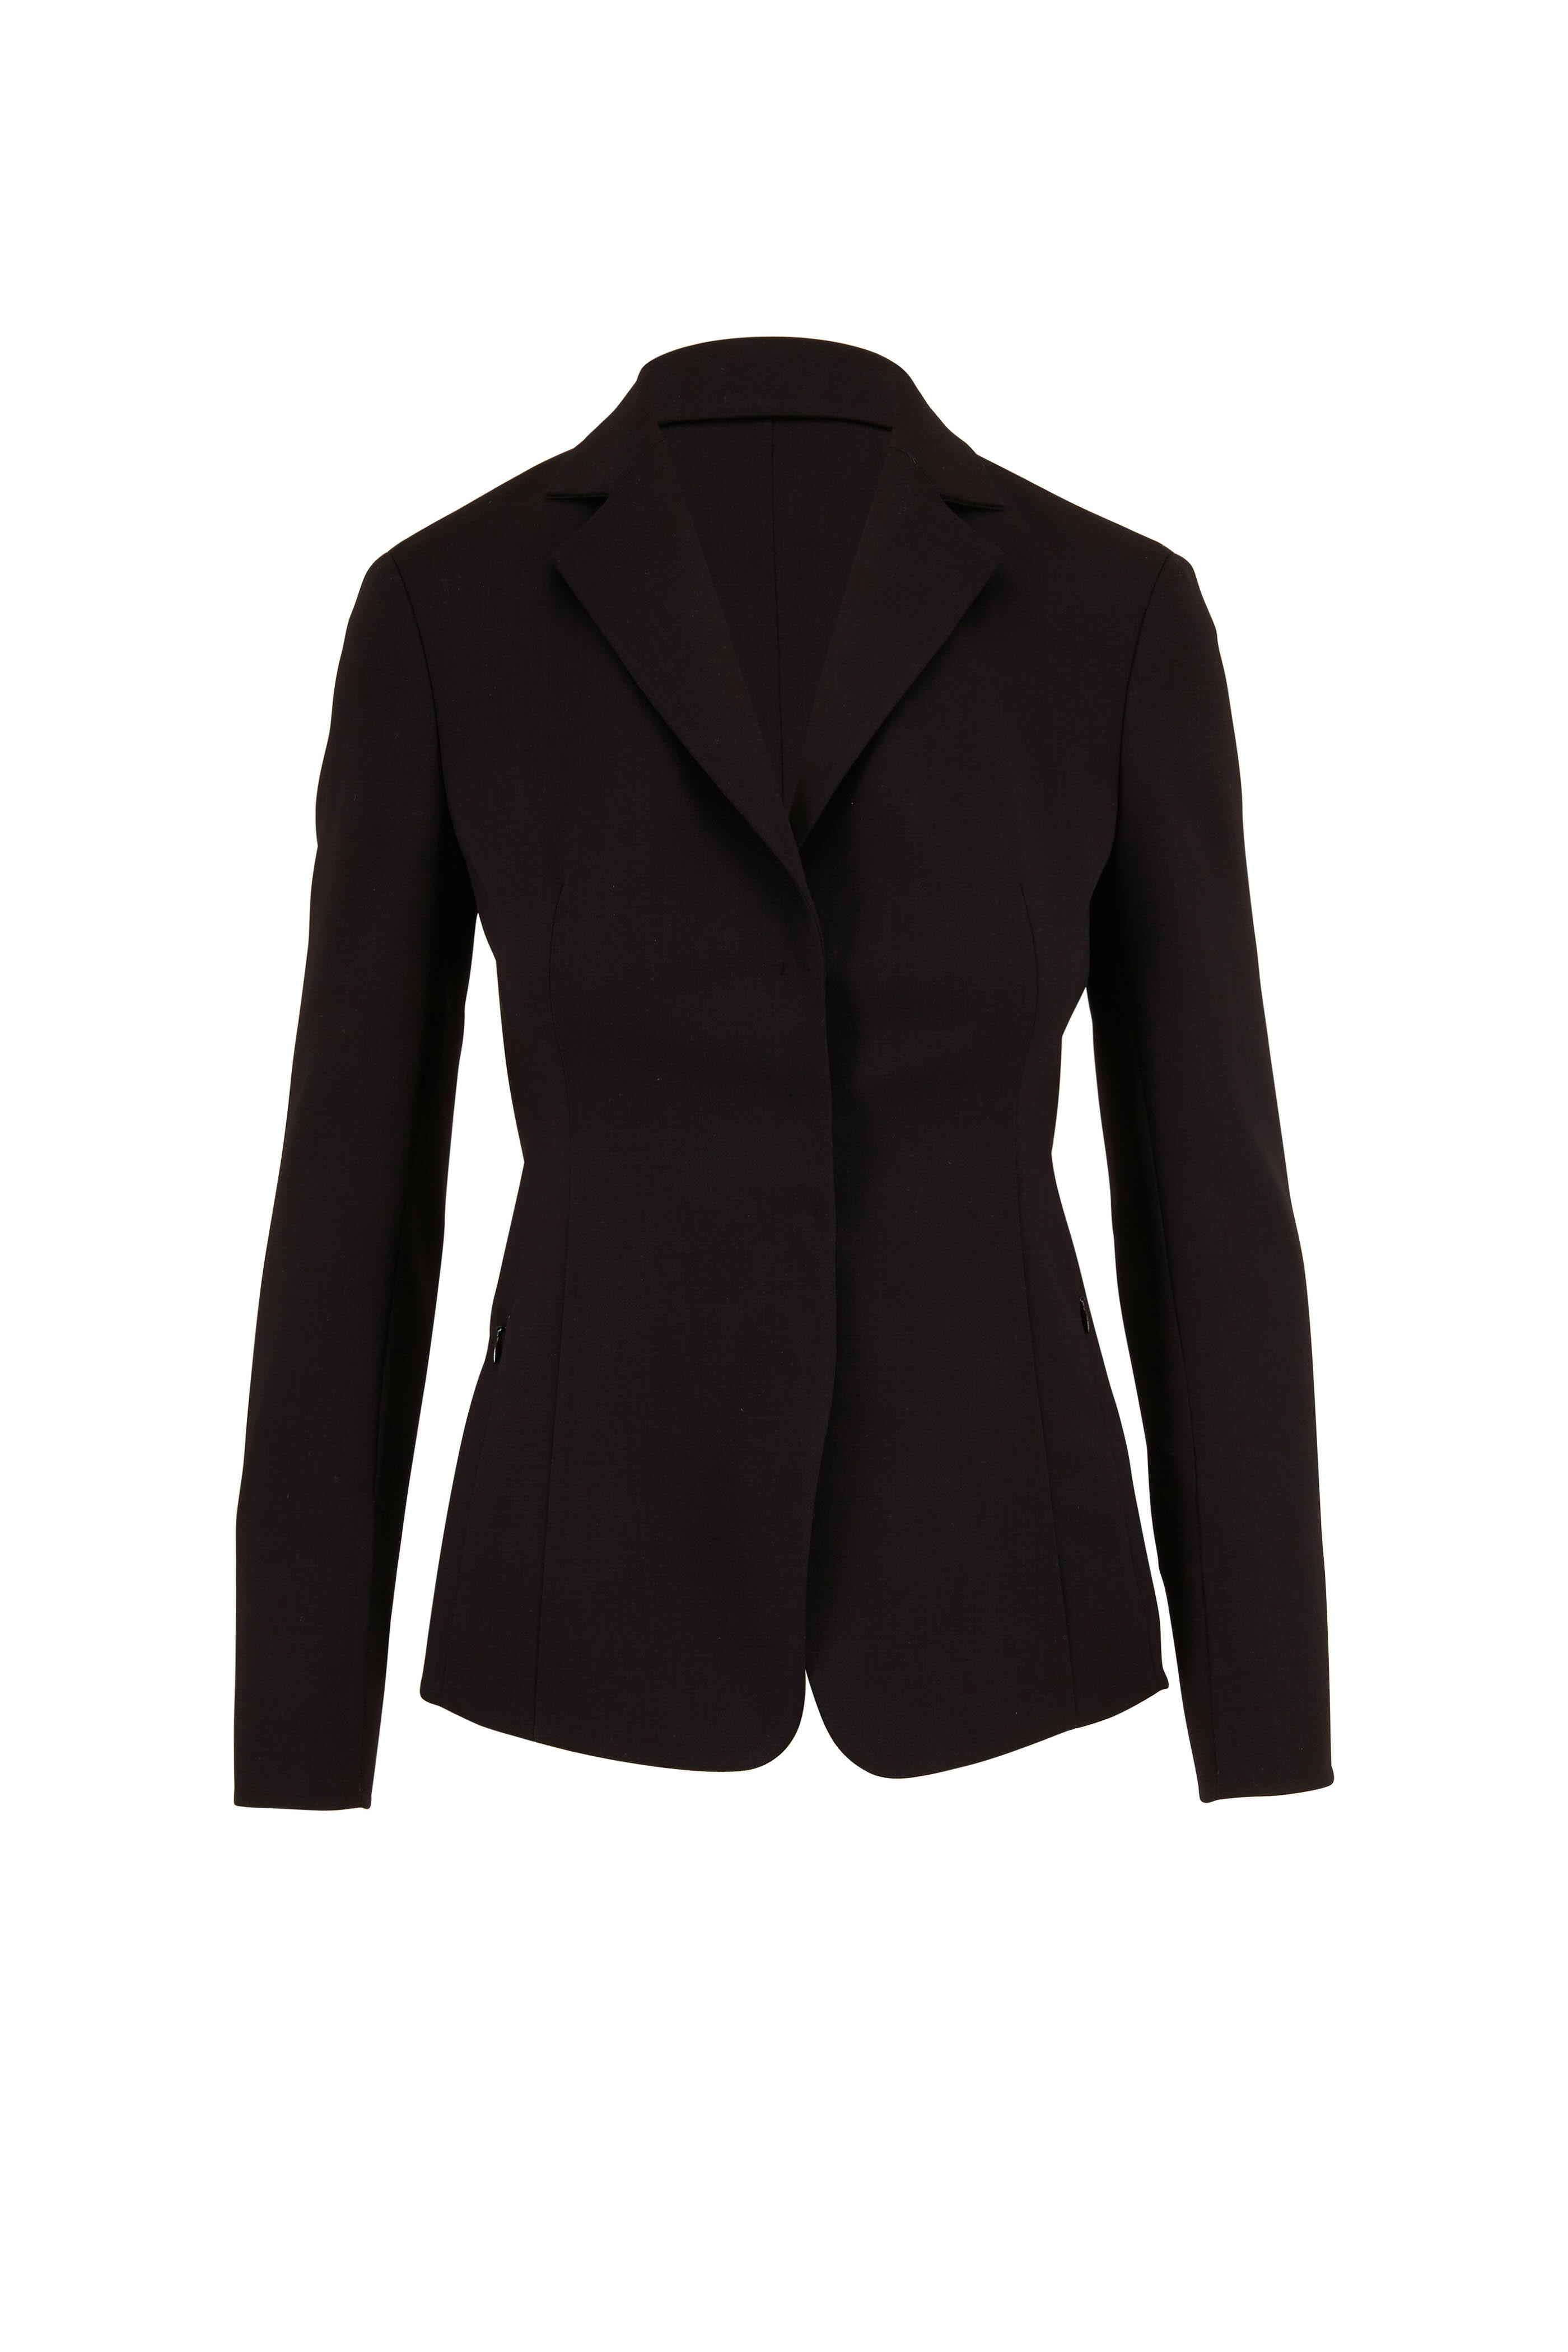 Akris - Savino Black Double-Faced Wool Jacket | Mitchell Stores